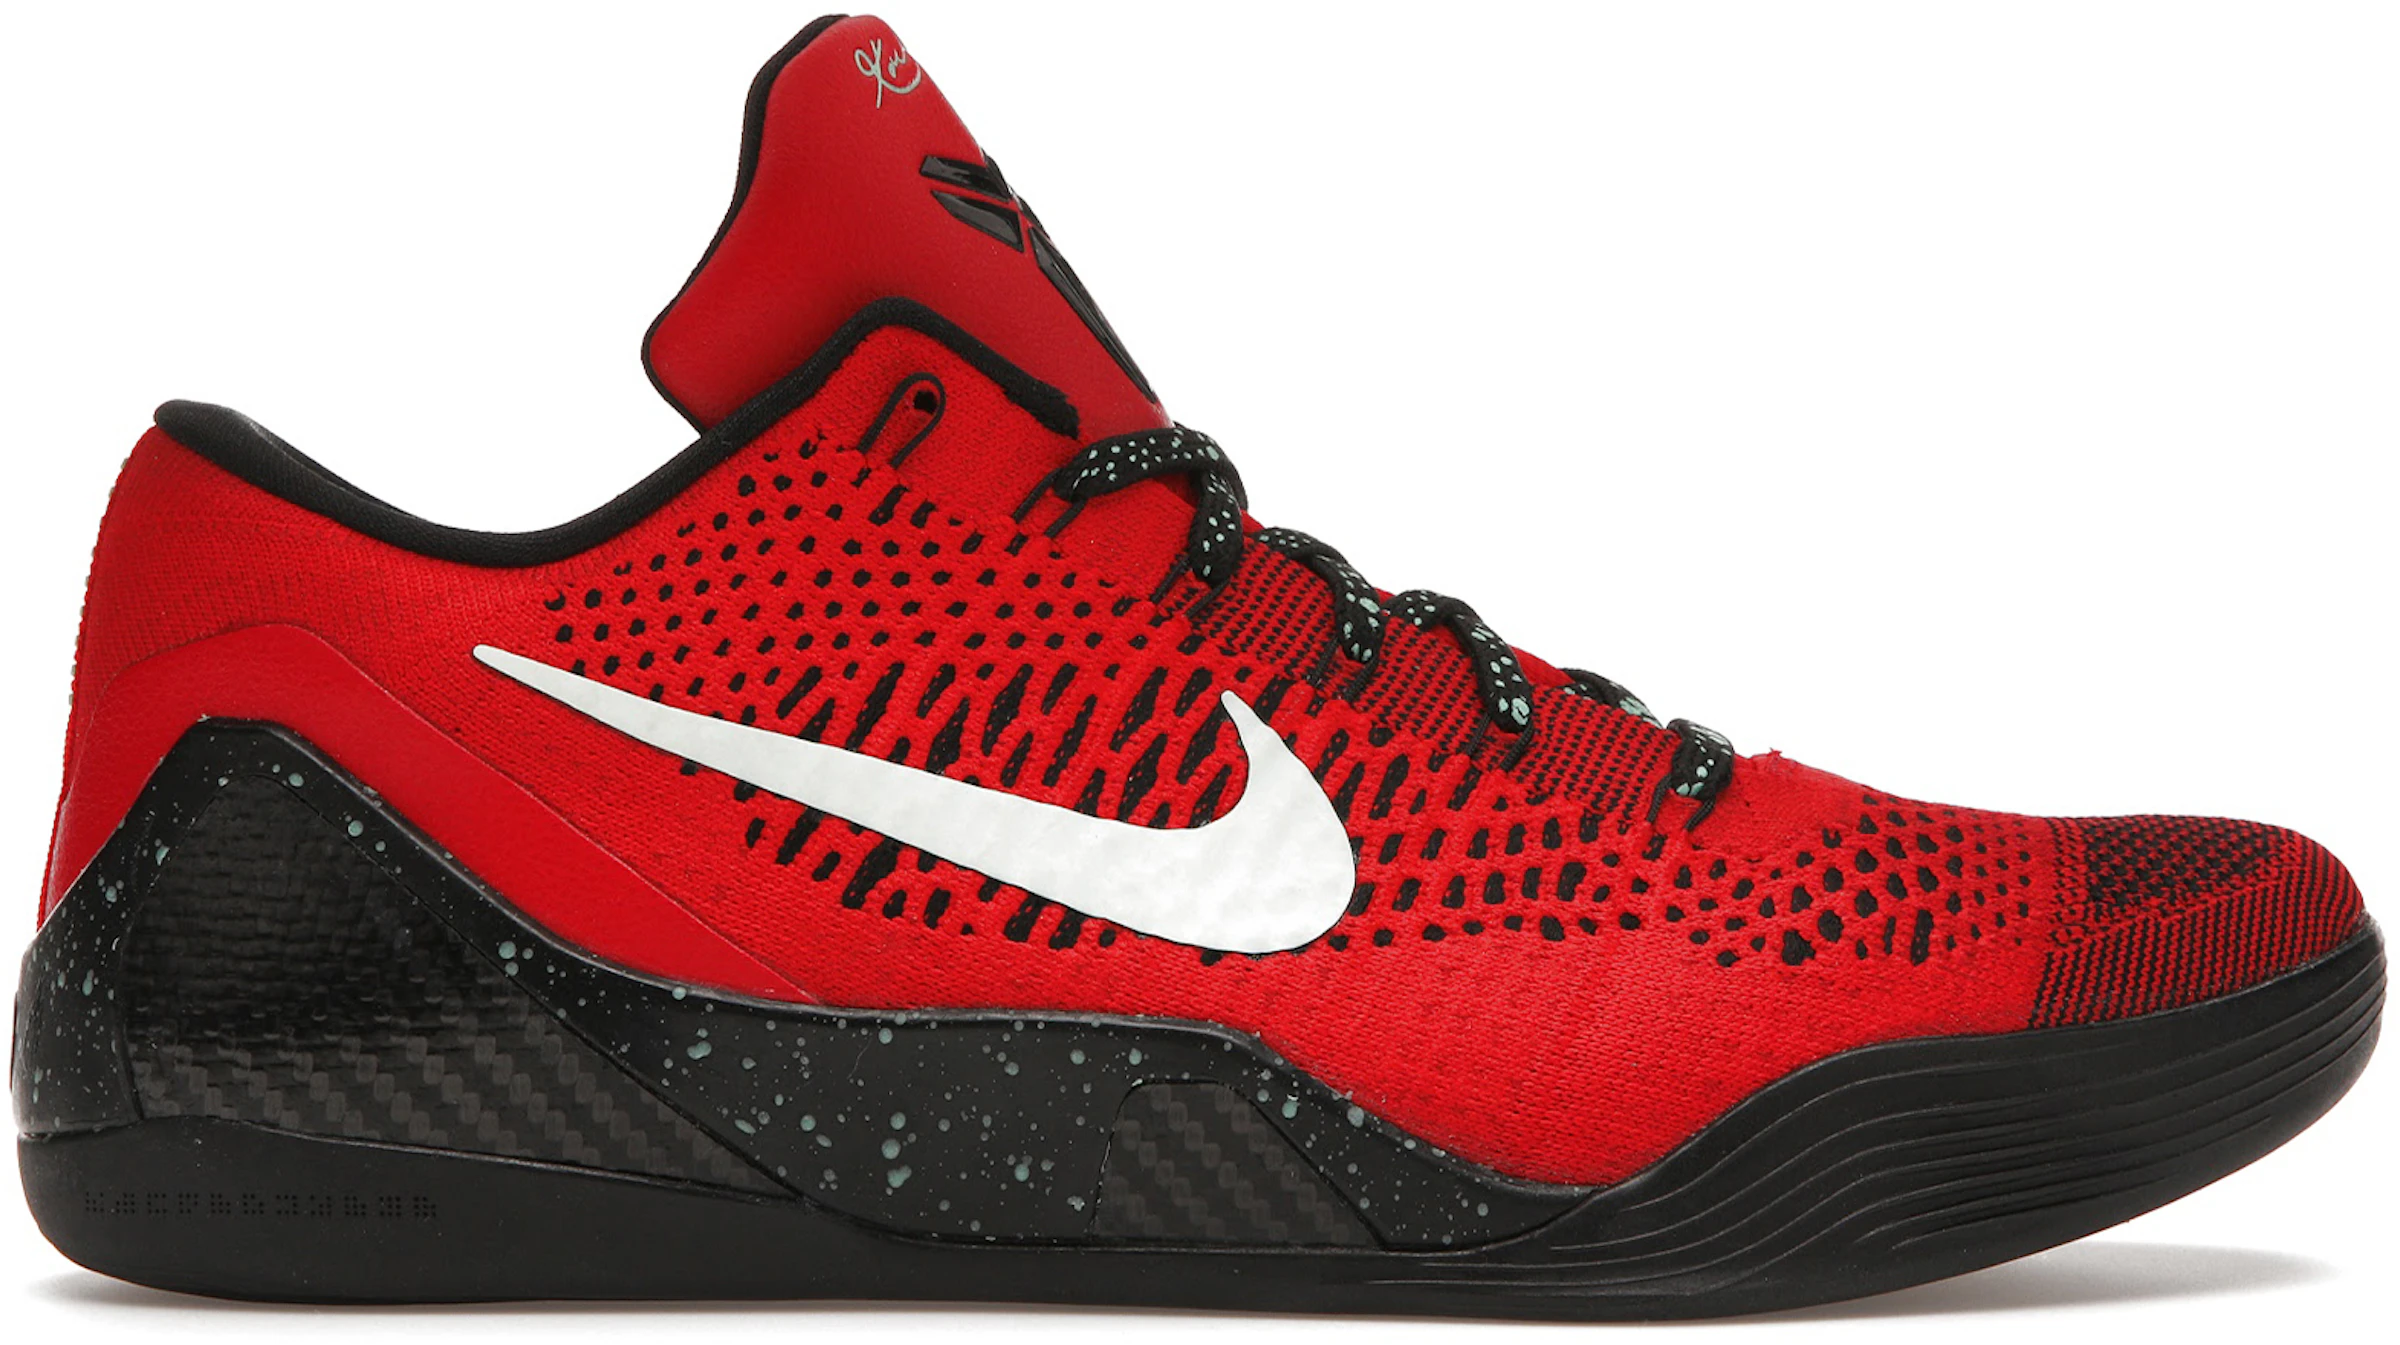 Nike Kobe 9 Calzado y sneakers nuevos - StockX